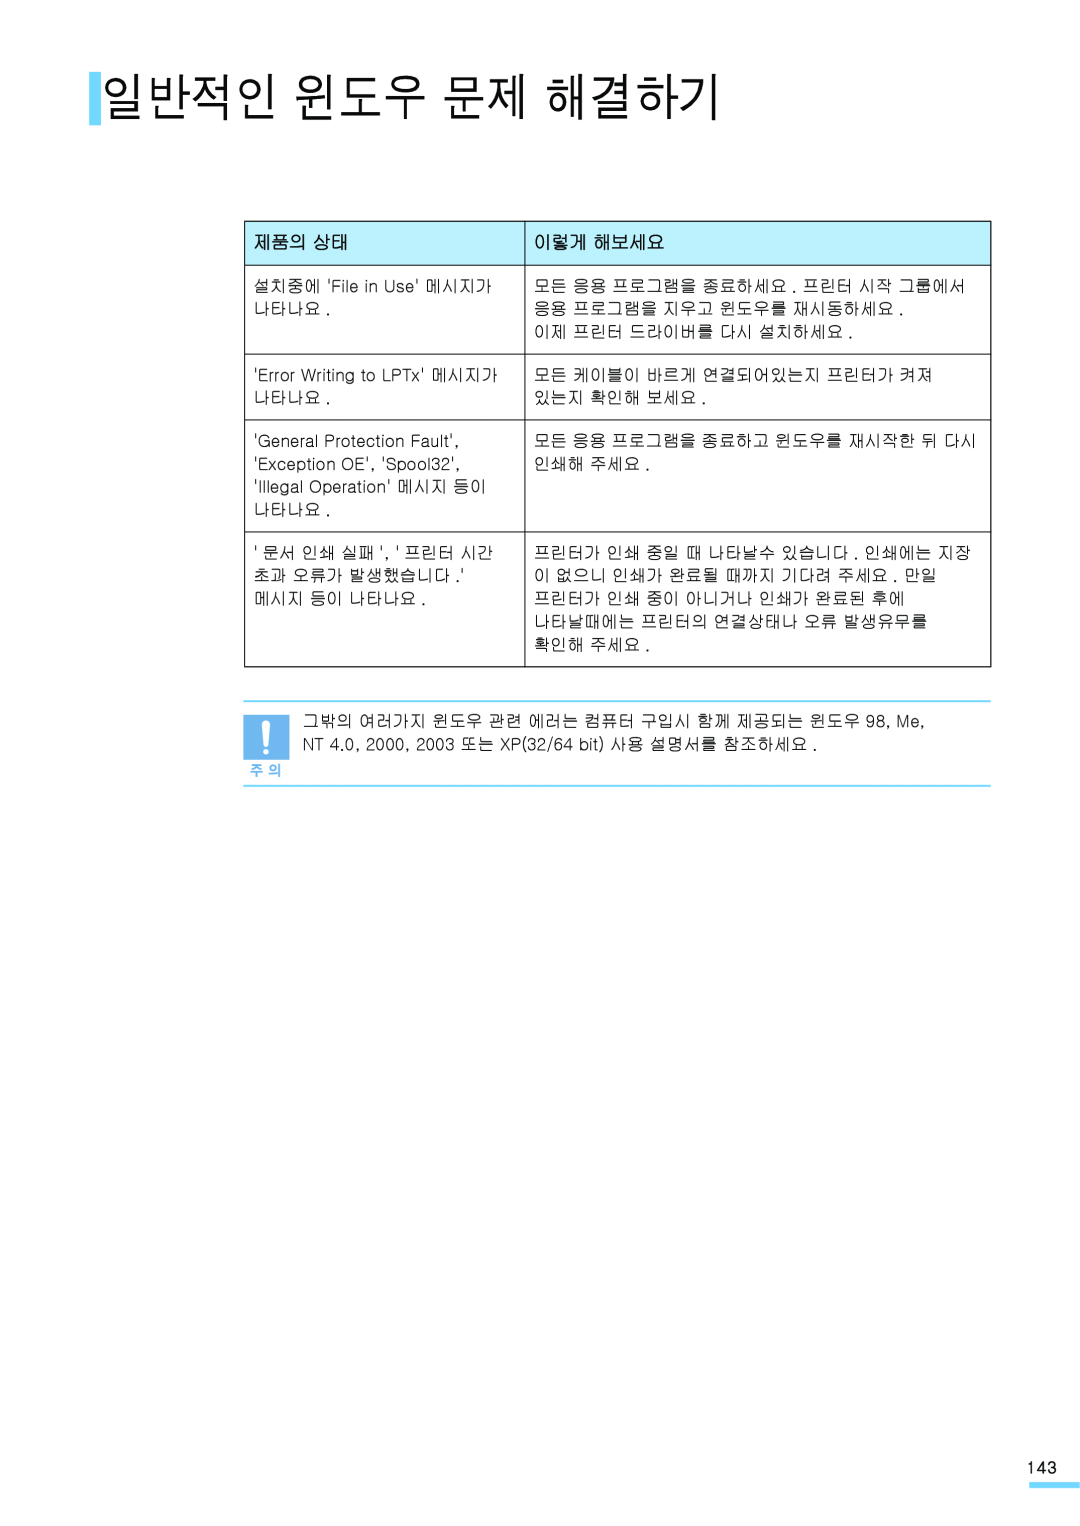 Samsung ML-2571N manual 일반적인 윈도우 문제 해결하기, 제품의 상태, 이렇게 해보세요 